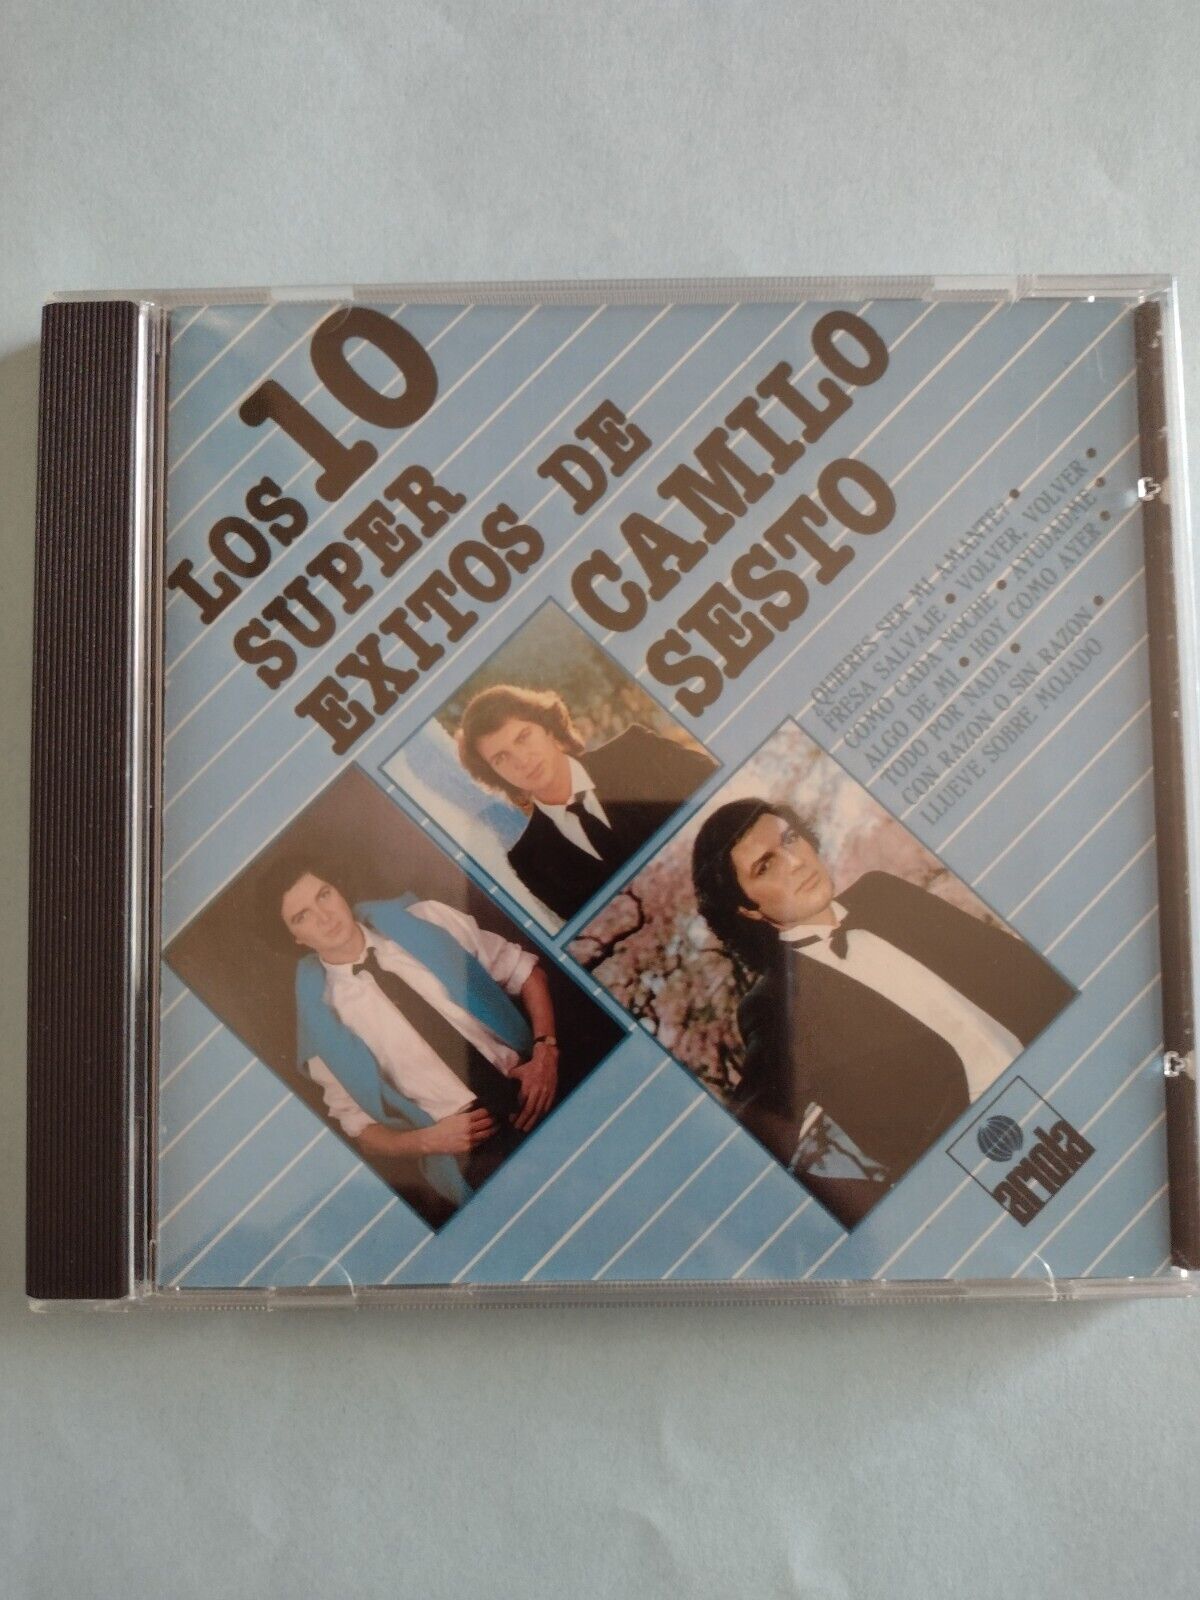 Los 10 Super Exitos de Camilo Sesto CD MUY BUENAS CONDICIONES 1984 Ariola